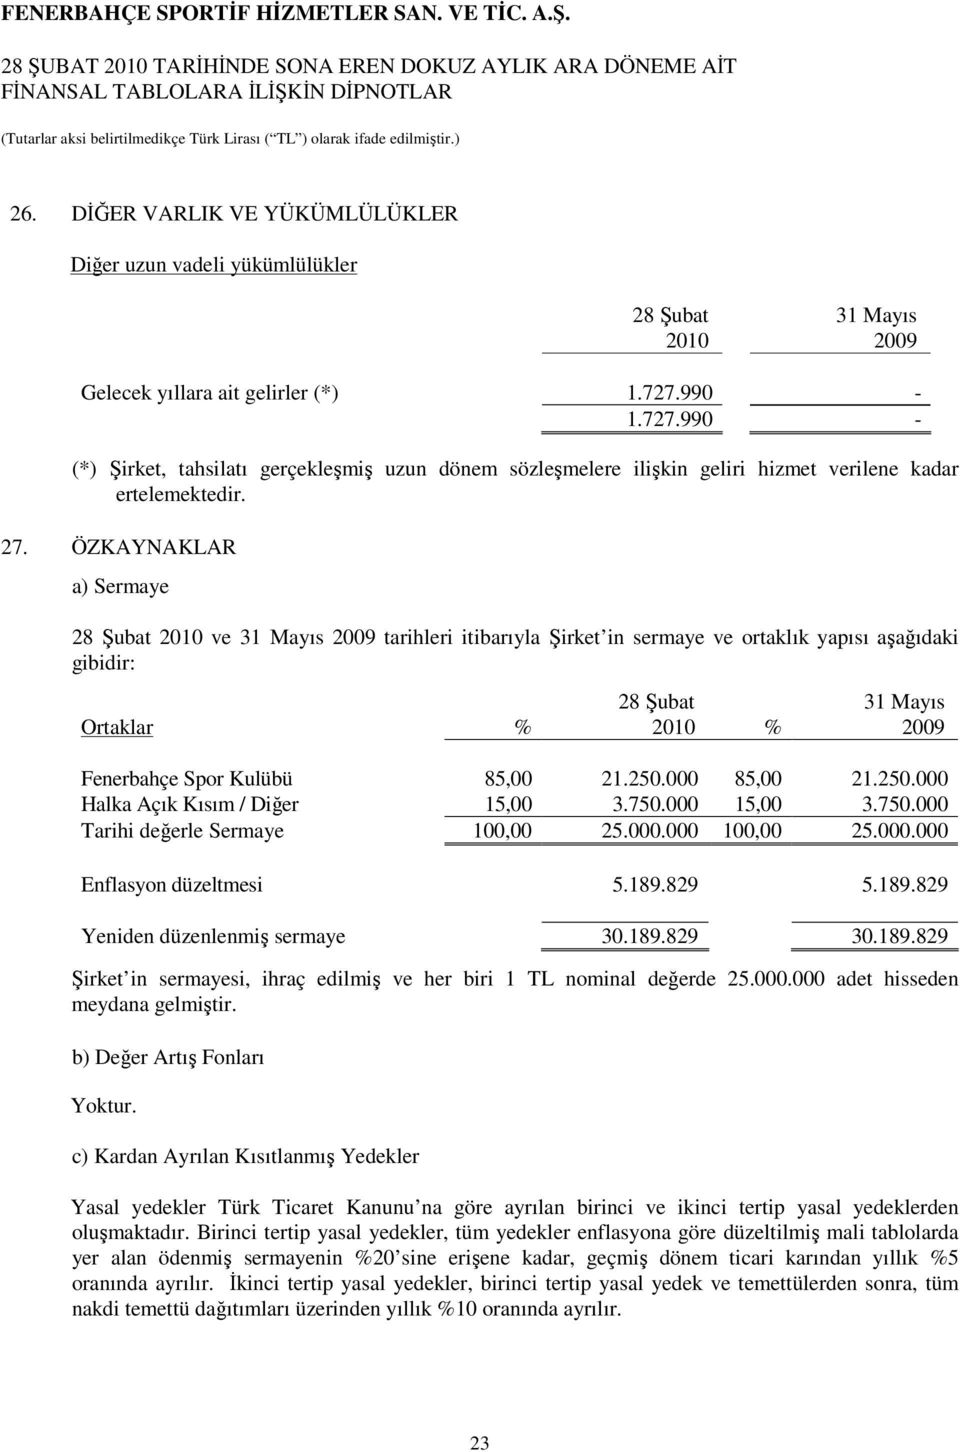 ÖZKAYNAKLAR a) Sermaye ve 31 Mayıs tarihleri itibarıyla Şirket in sermaye ve ortaklık yapısı aşağıdaki gibidir: Ortaklar % % 31 Mayıs Fenerbahçe Spor Kulübü 85,00 21.250.